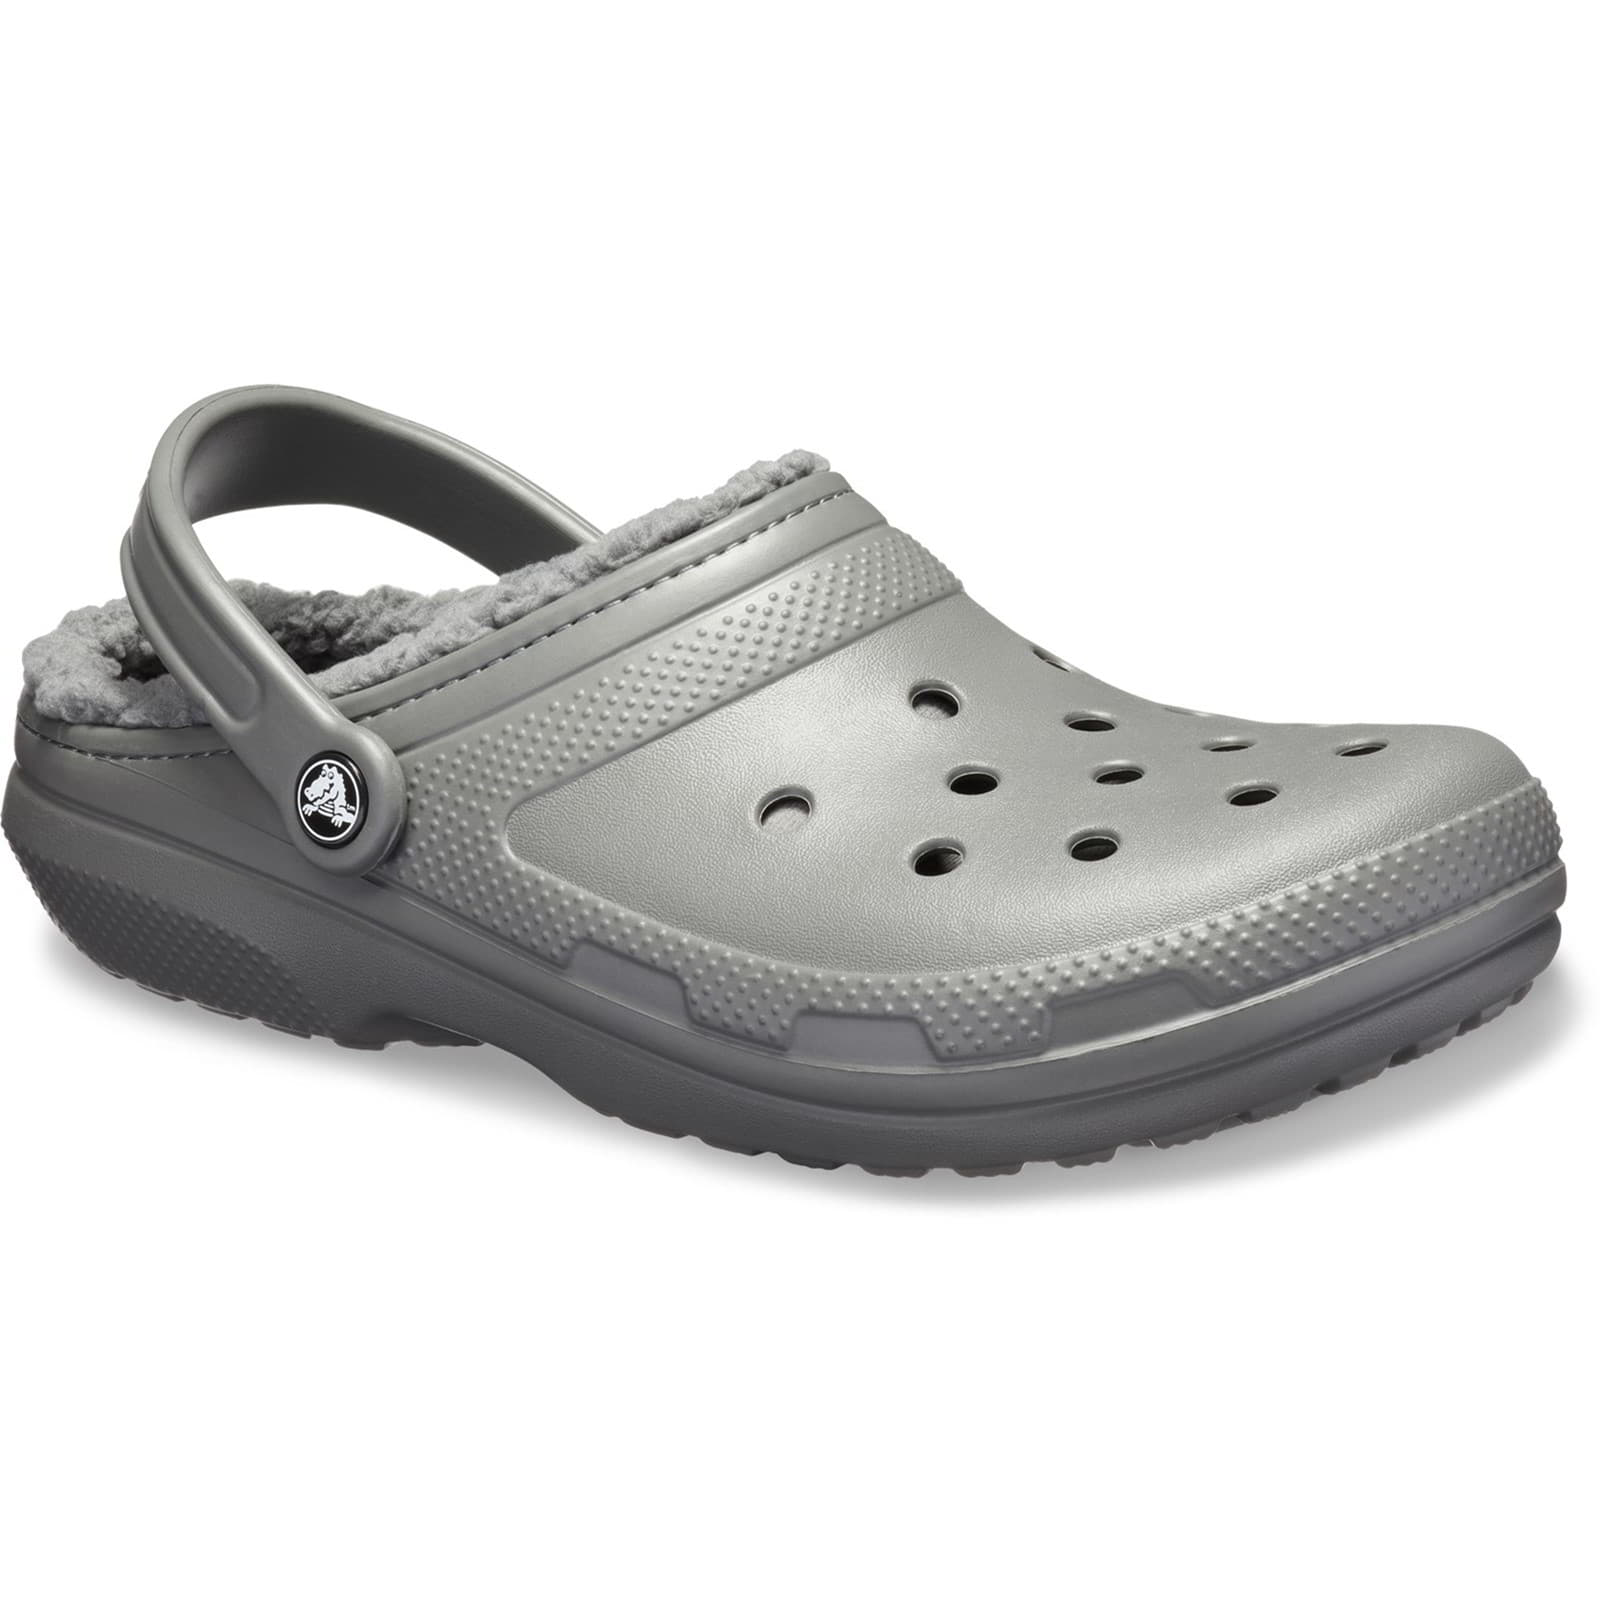 Crocs Men's Women's Classic Lined Clog Warm Slip On Slippers Shoes - UK M6-W7 / EU 39-40 / US M7-W9